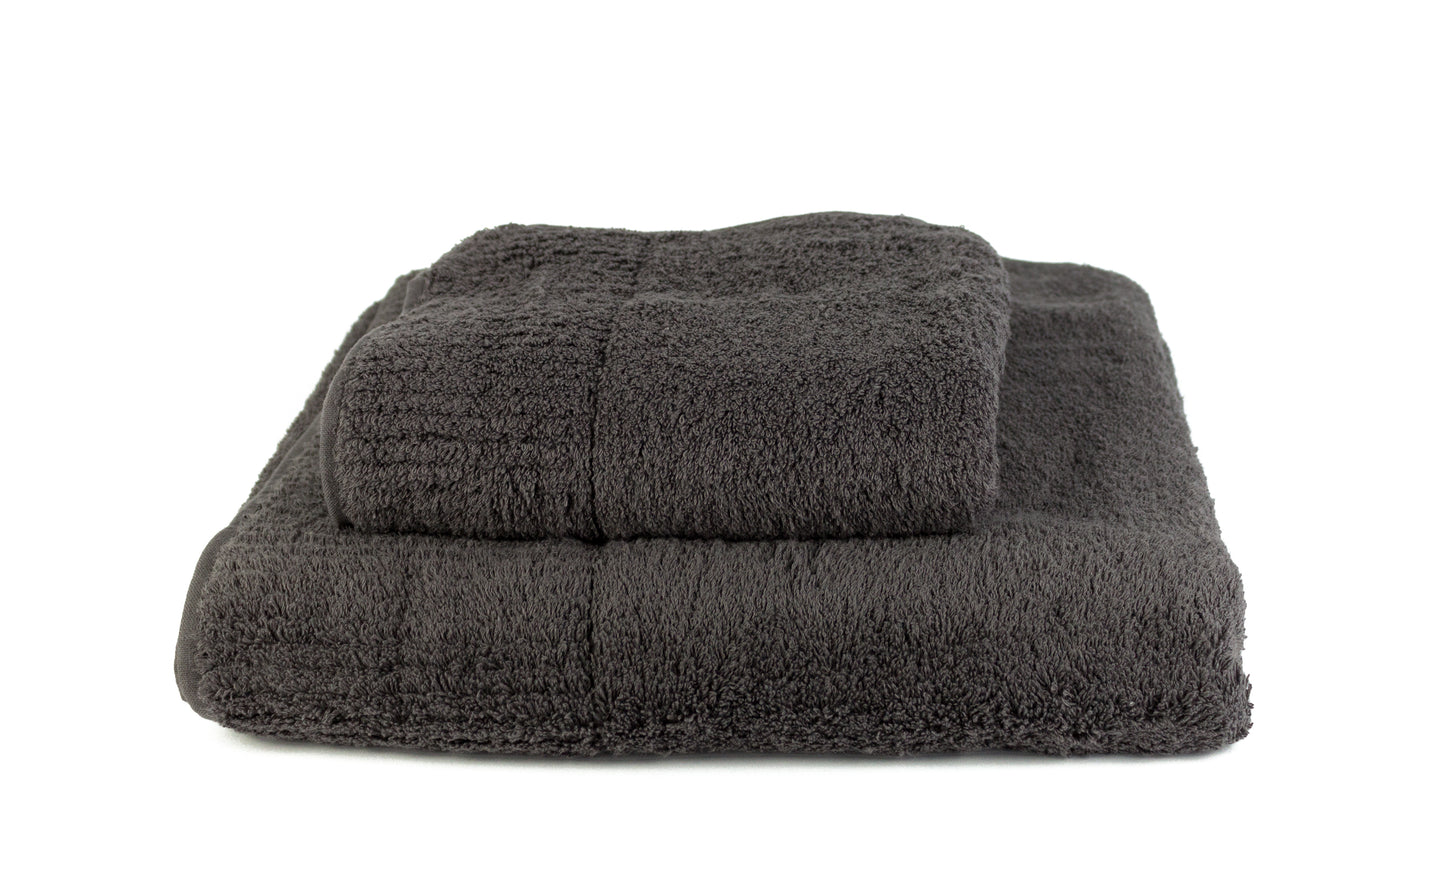 Premium charcoal – Handtuch aus Baumwollfrottee